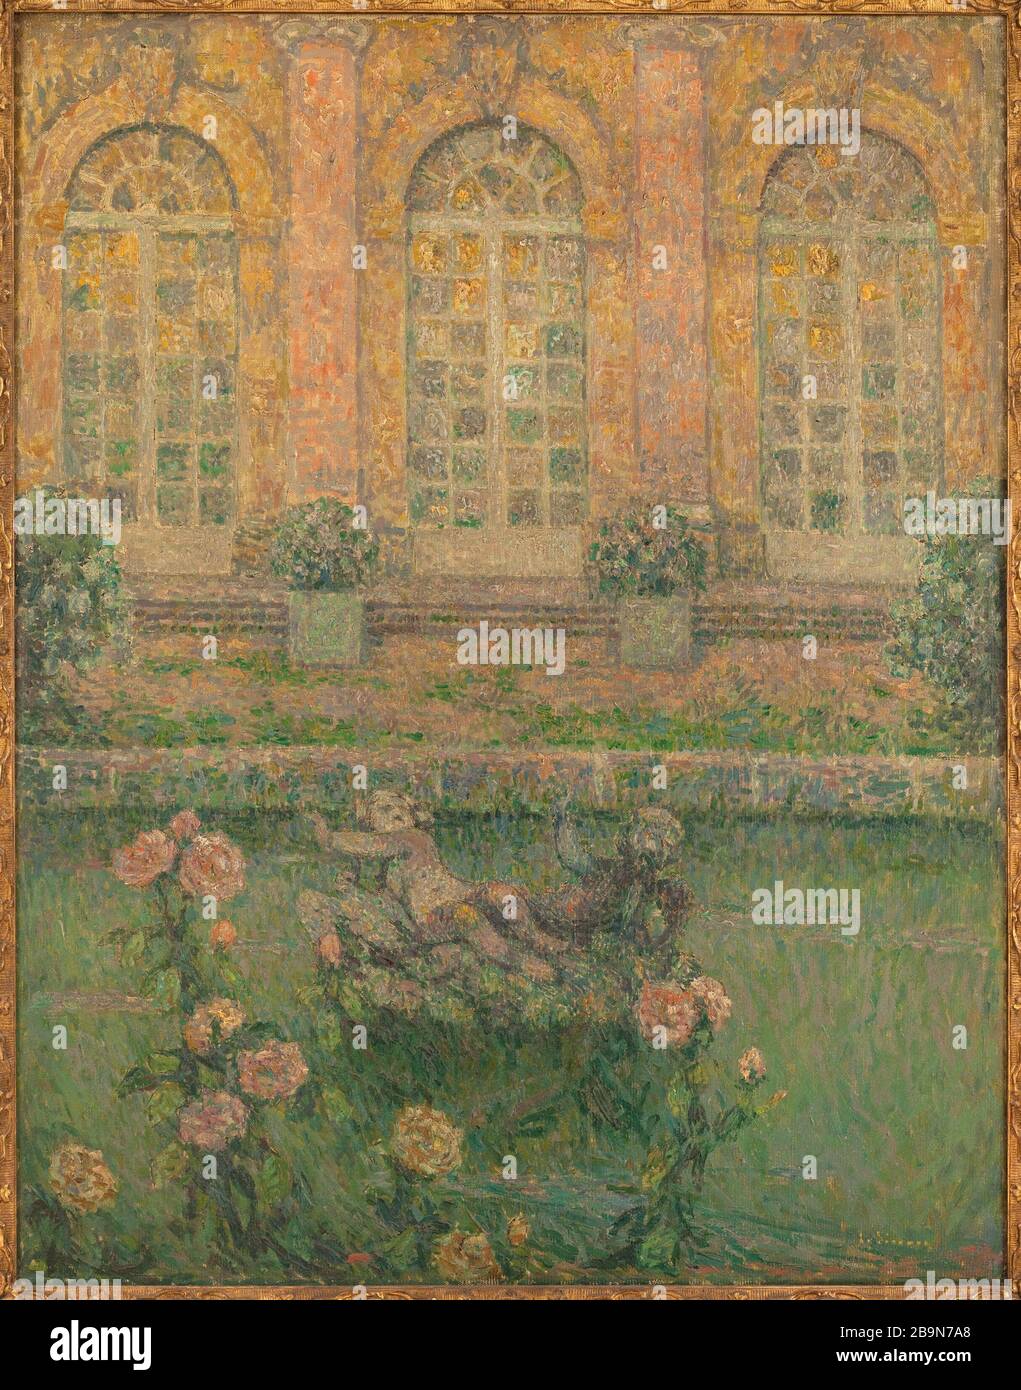 Roses Trianon Henri le Sidaner (1862-1939). "Roses de Trianon". Huile sur toile. 1917. Musée des Beaux-Arts de la Ville de Paris, Petit Palais. Foto Stock